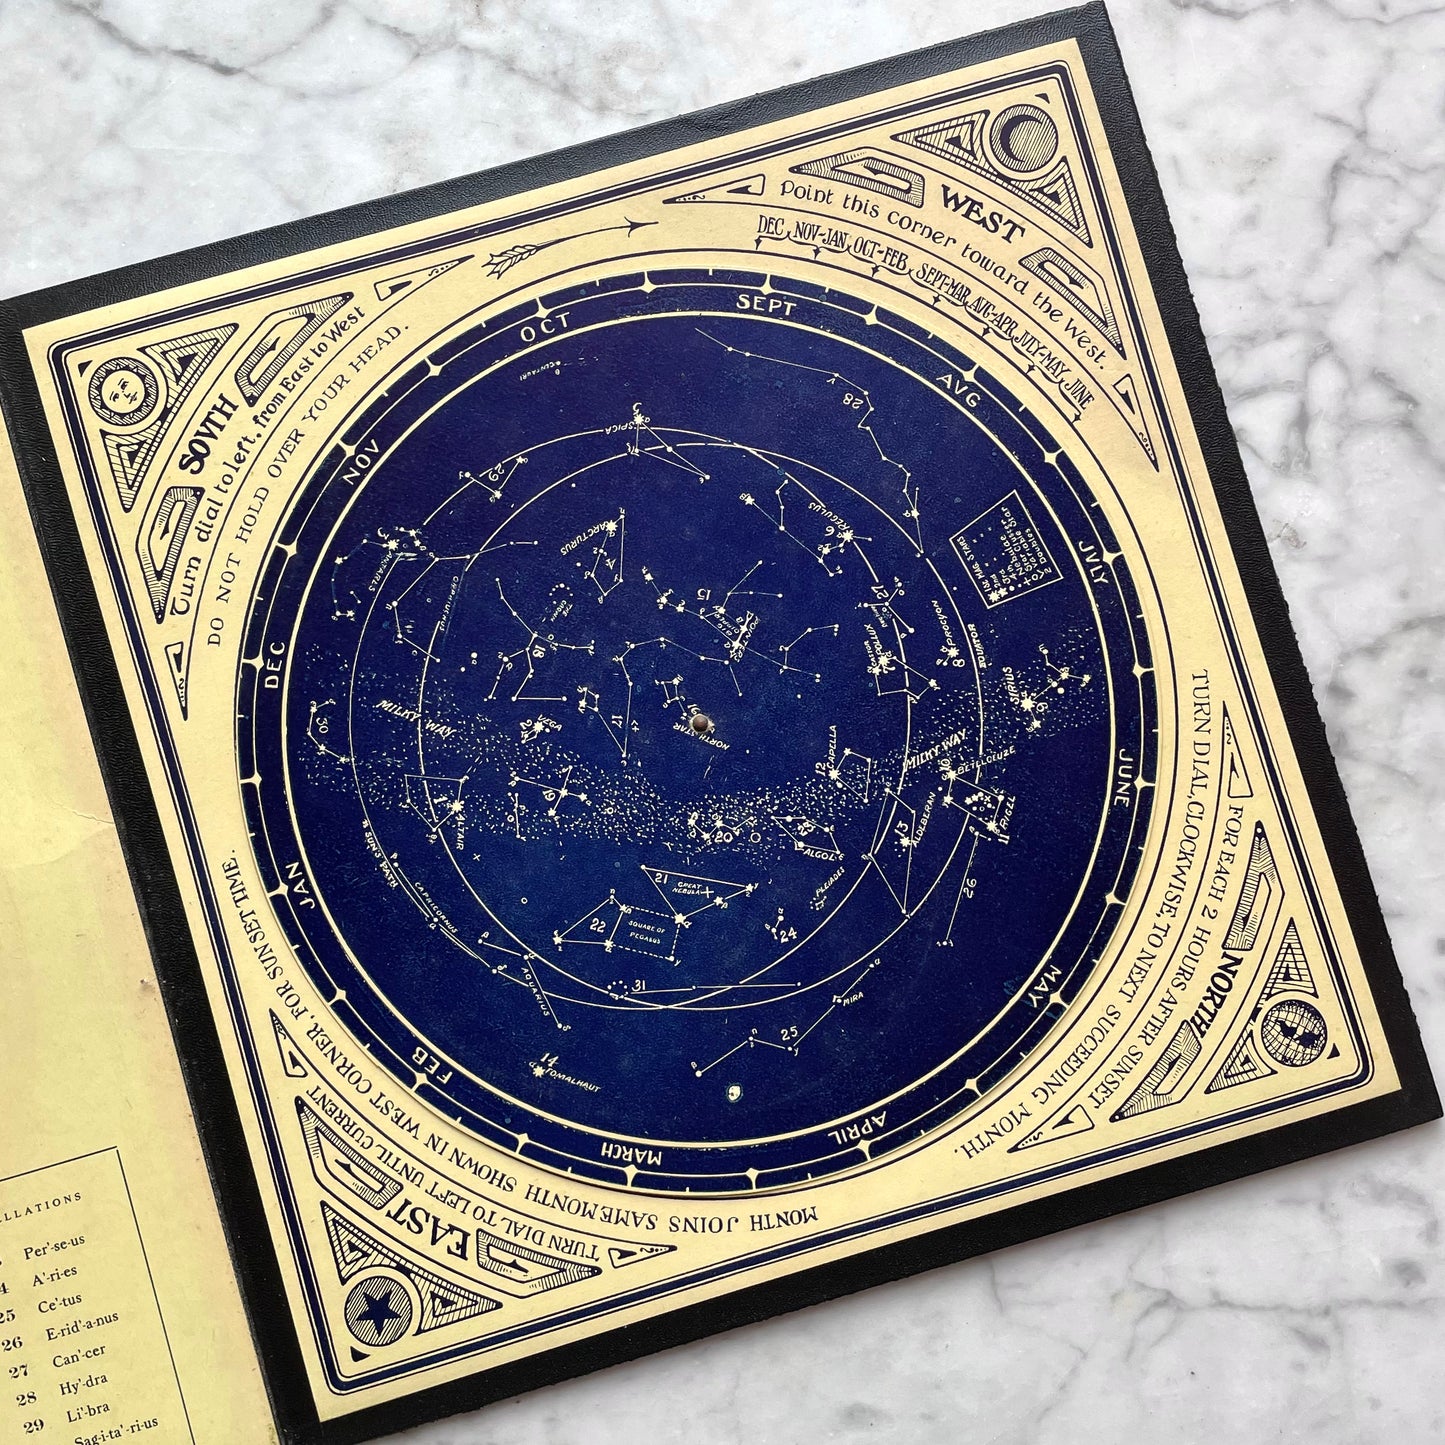 Universal Star Finder, Antique Planisphere, 1911